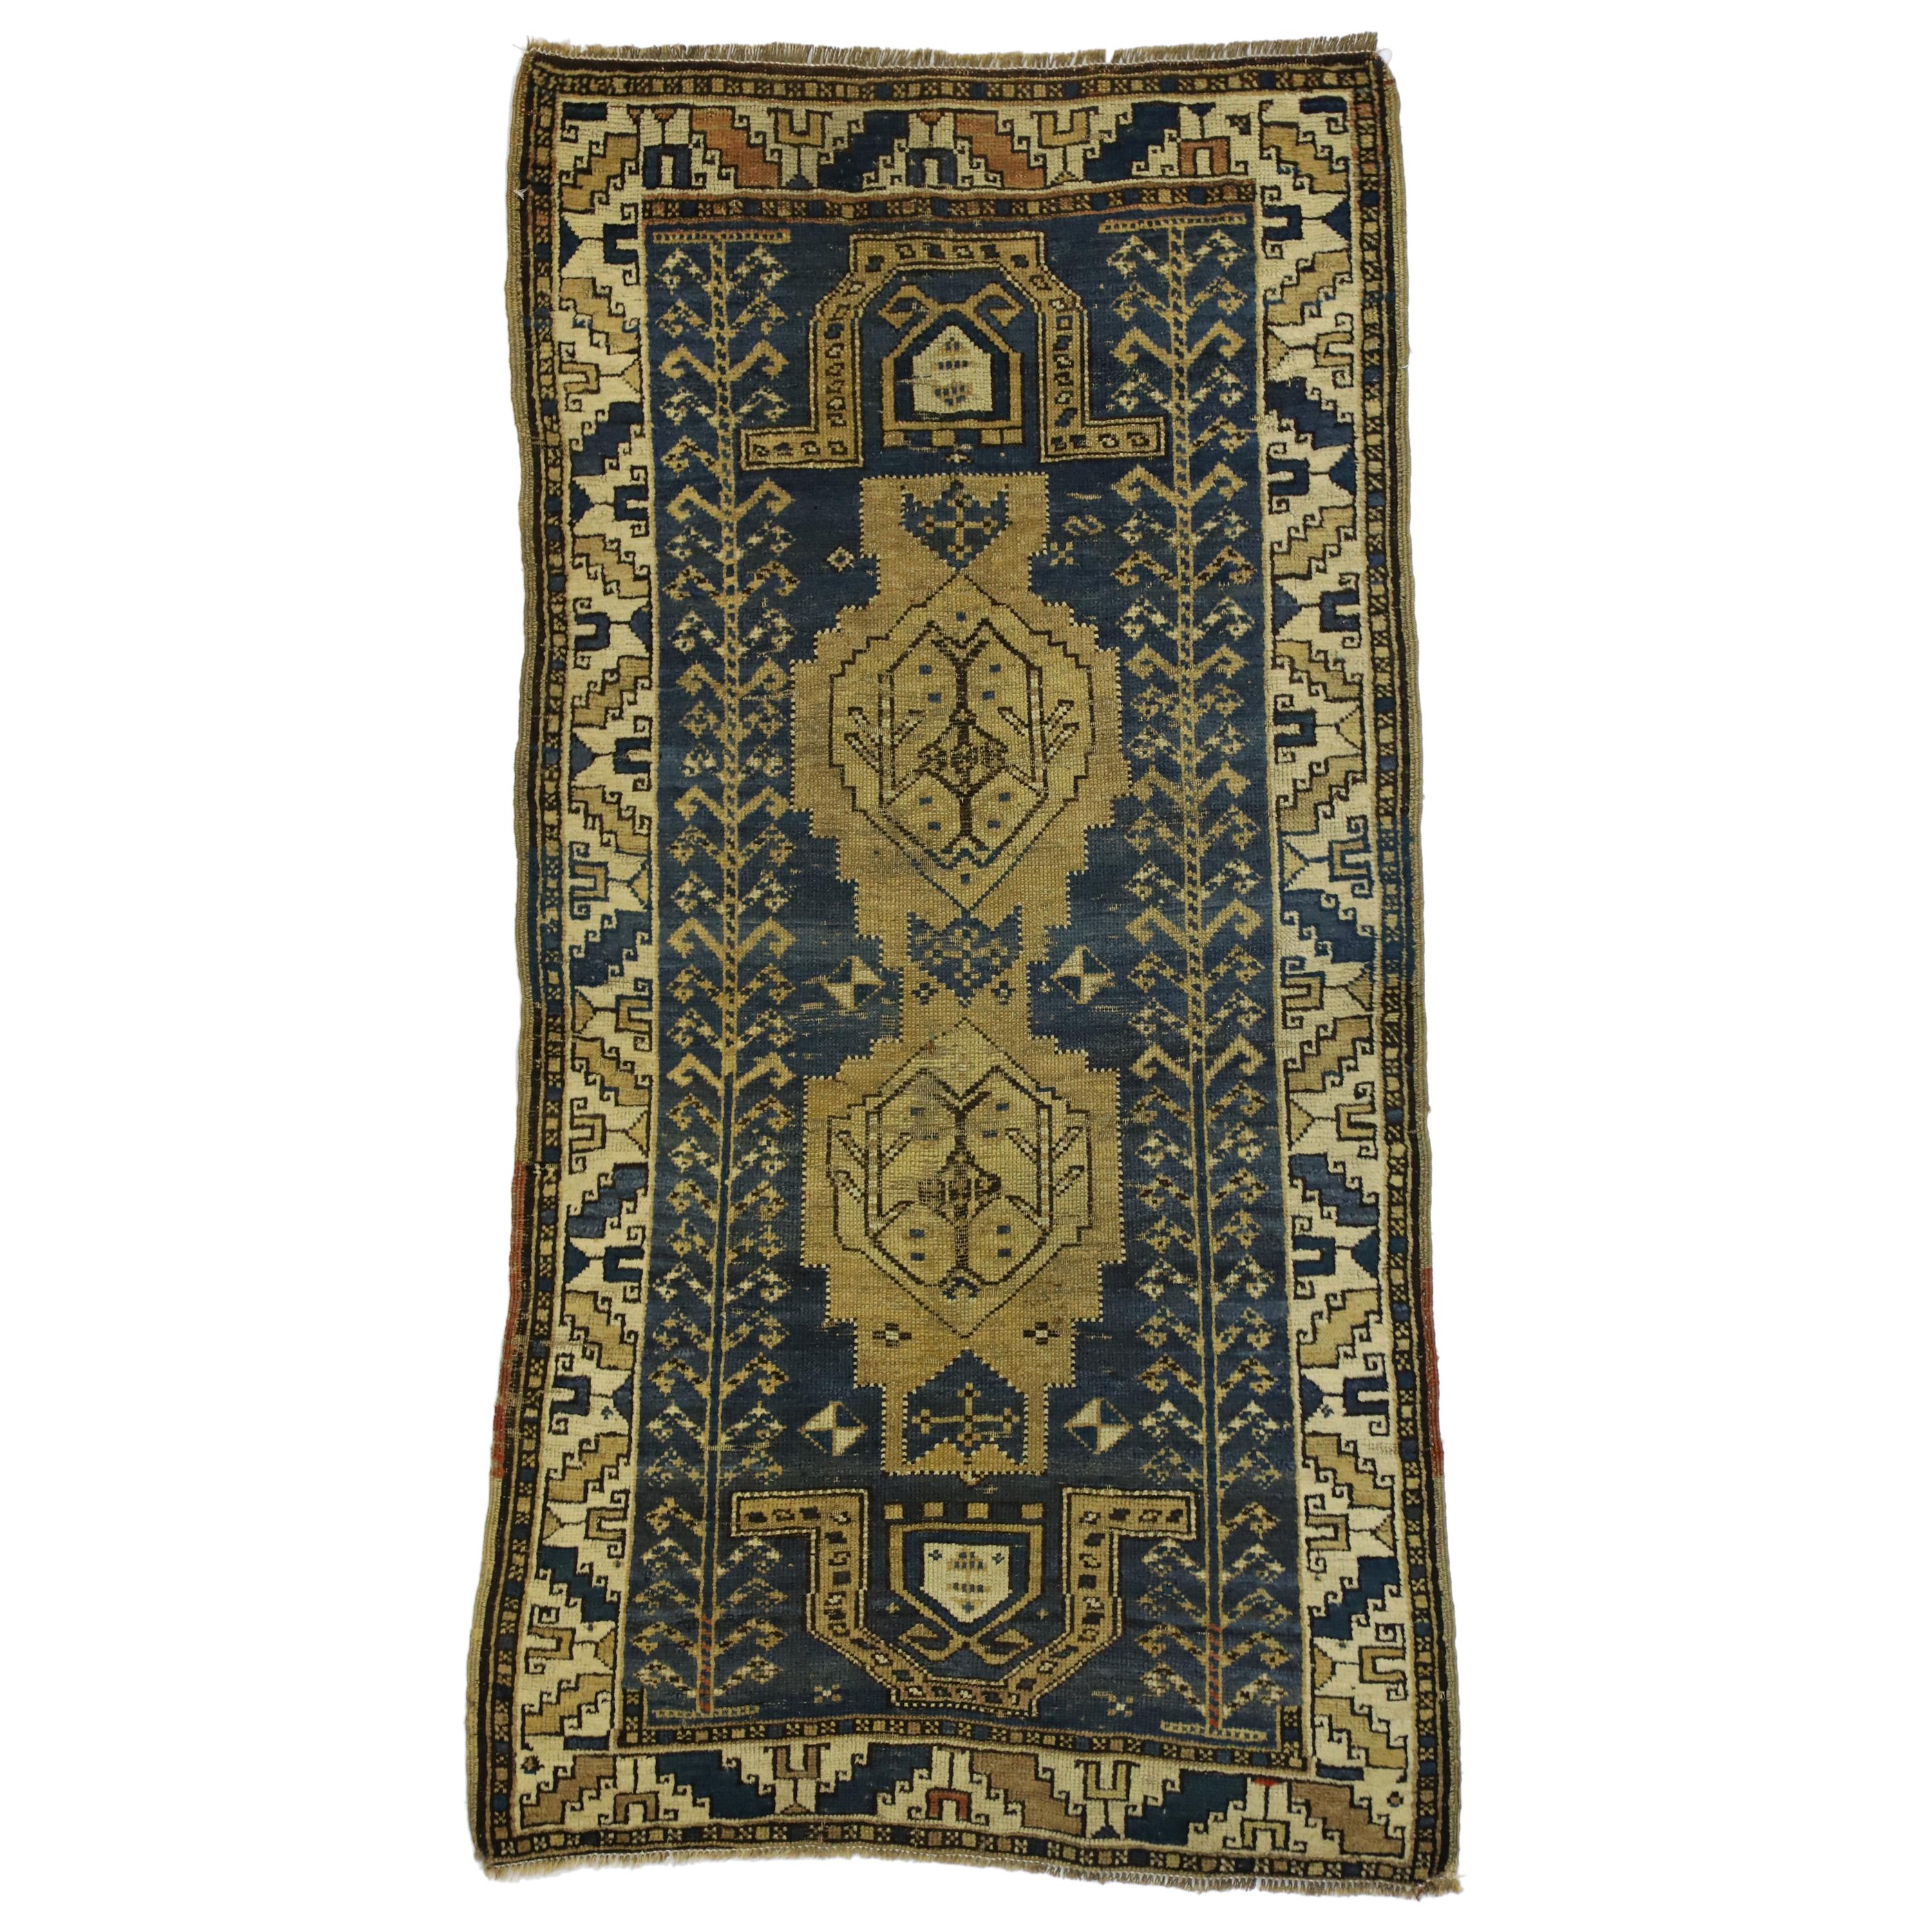 Antique Caucasian Kazak Rug with Artisan Tribal Style